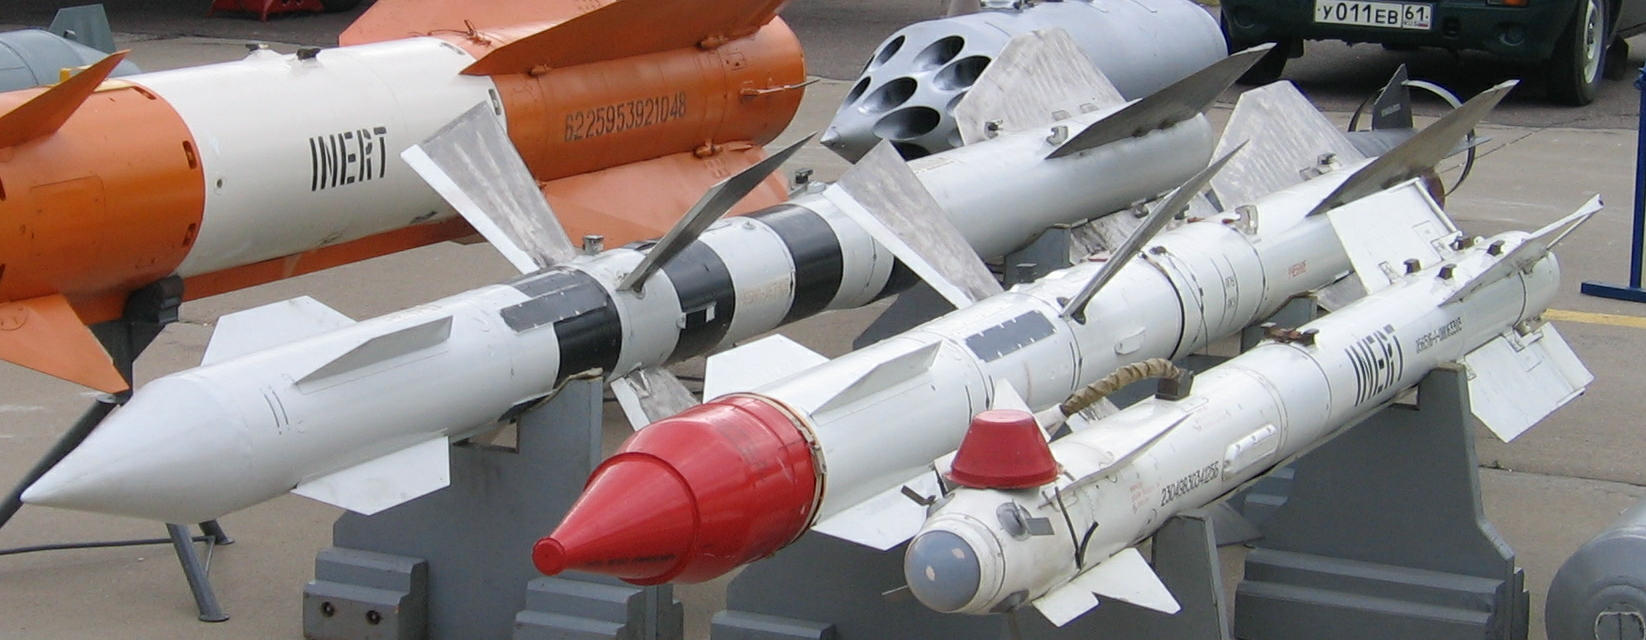 Р-23 (ракета)